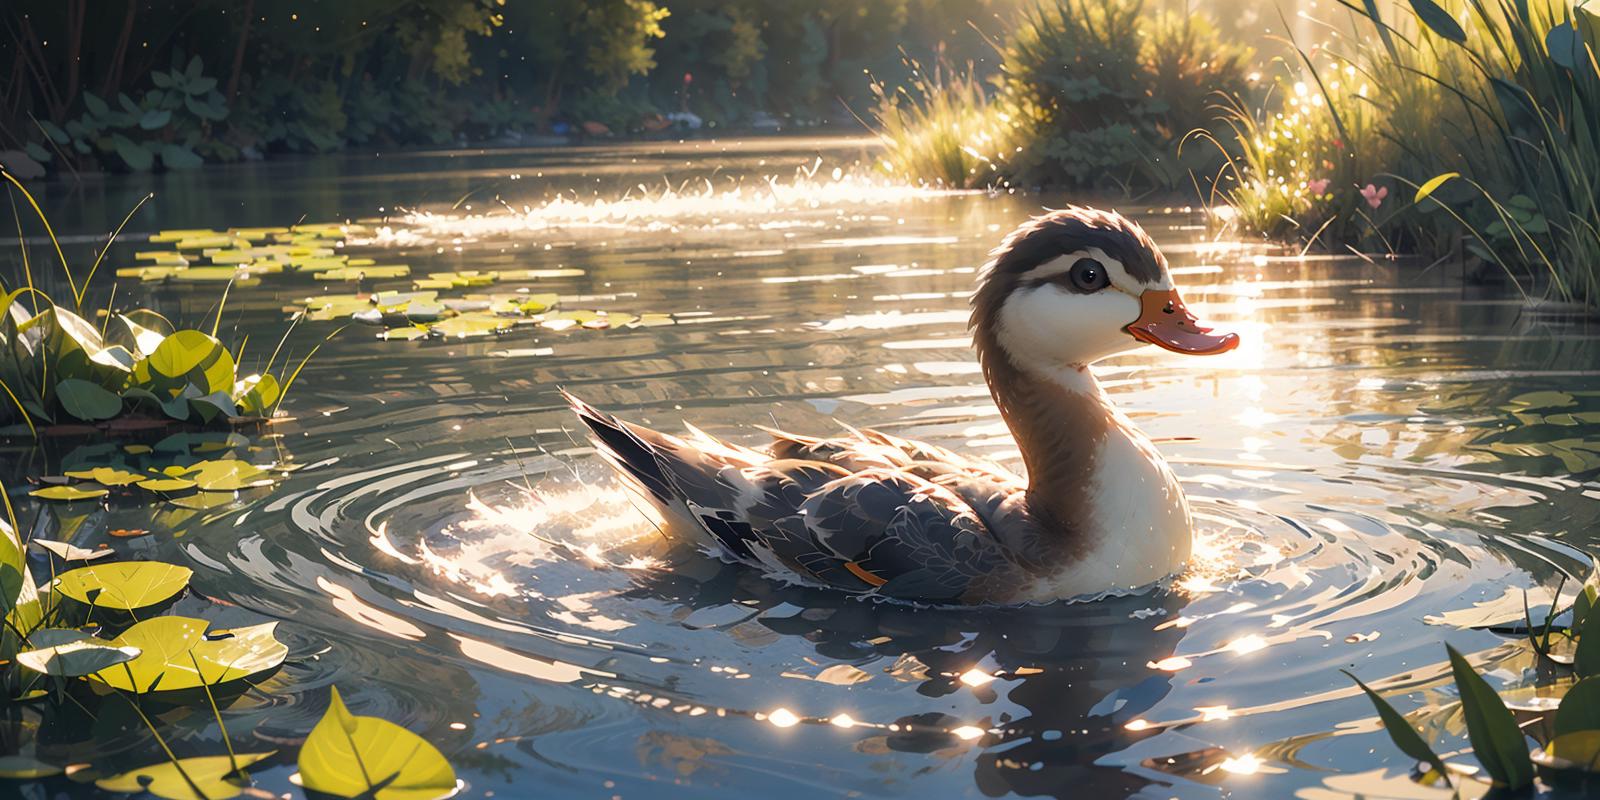 野鸭子/Cute duck Lora image by chosen